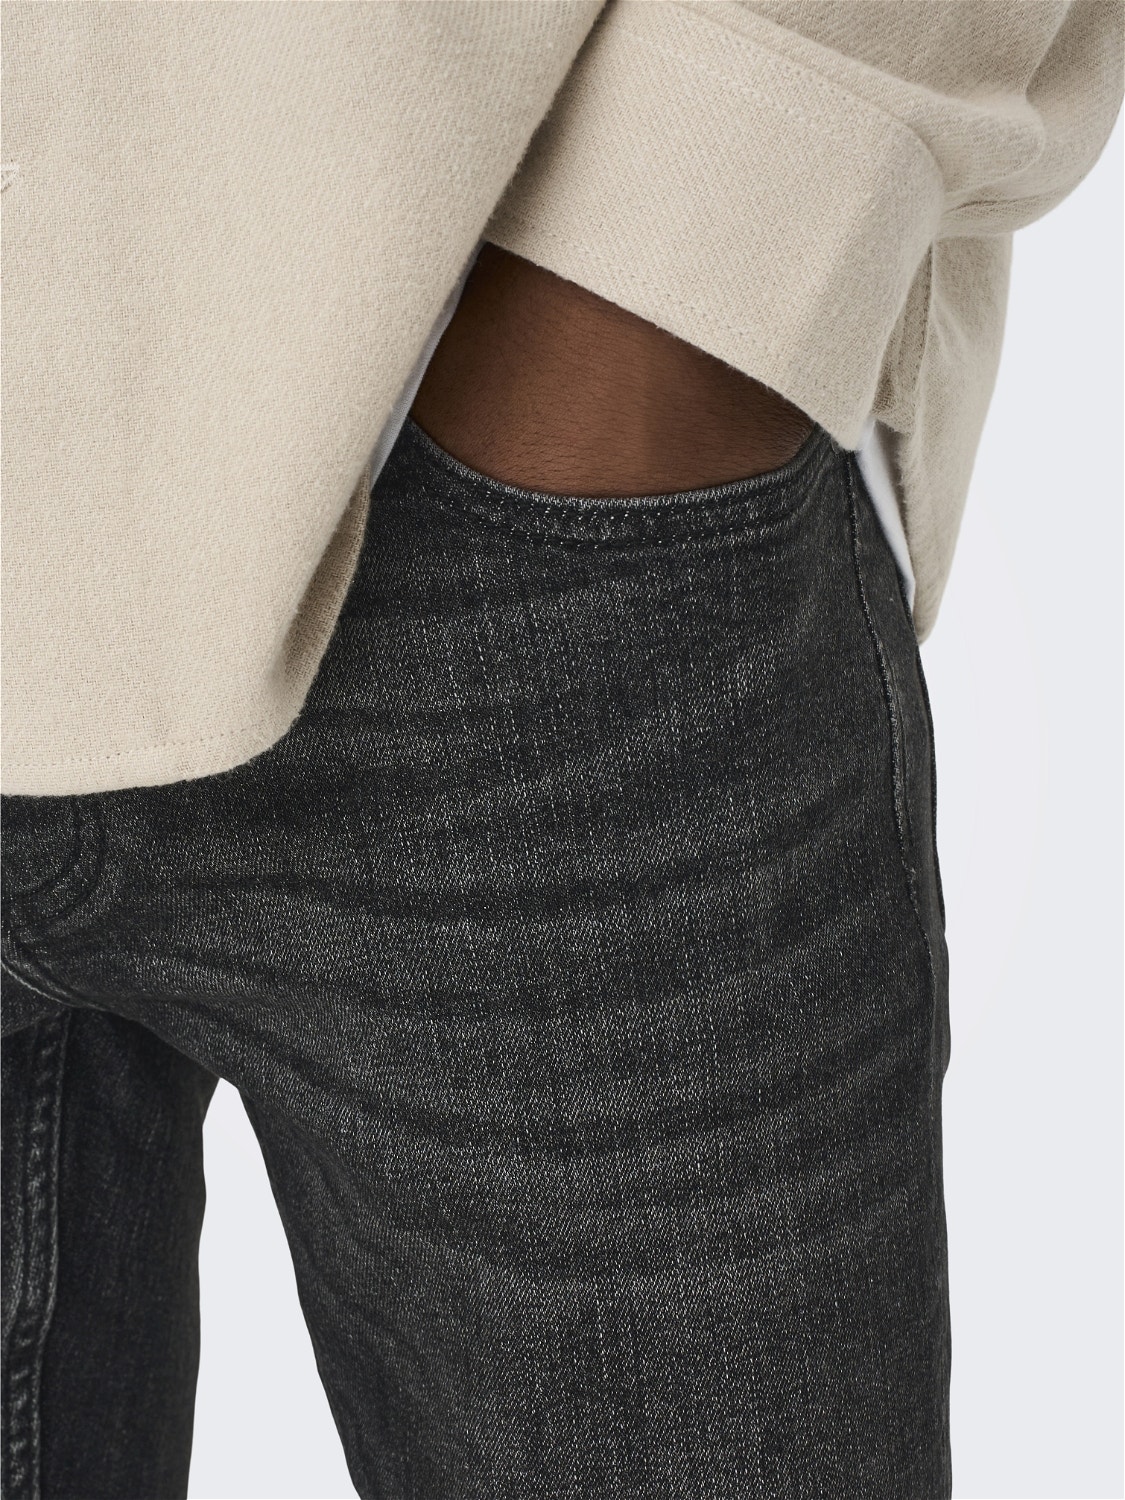 ONLY & SONS Jeans Slim Fit -Black Denim - 22023145